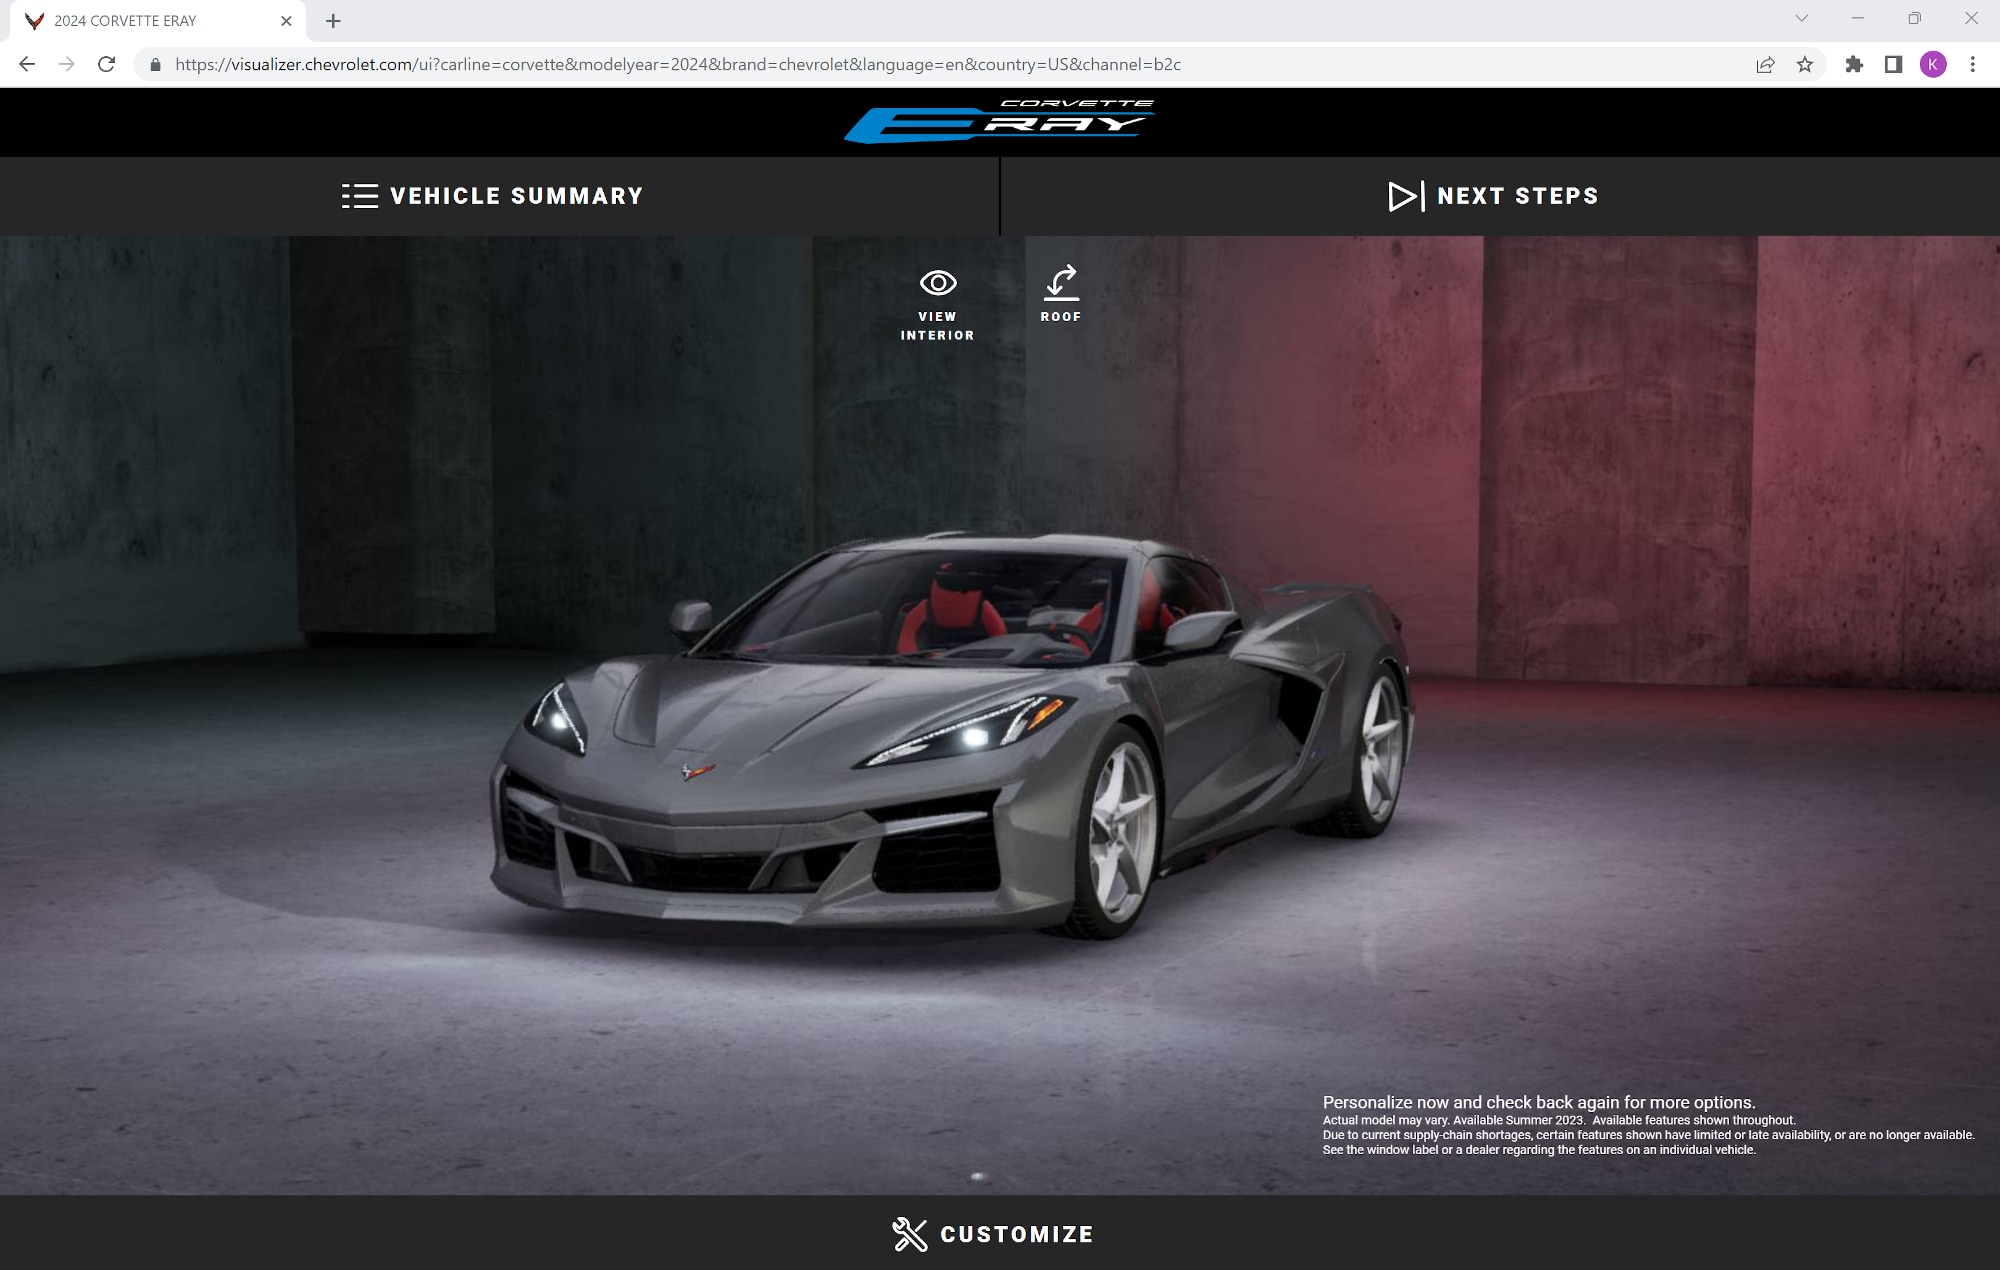 Chevrolet Corvette E-Ray leaked online image